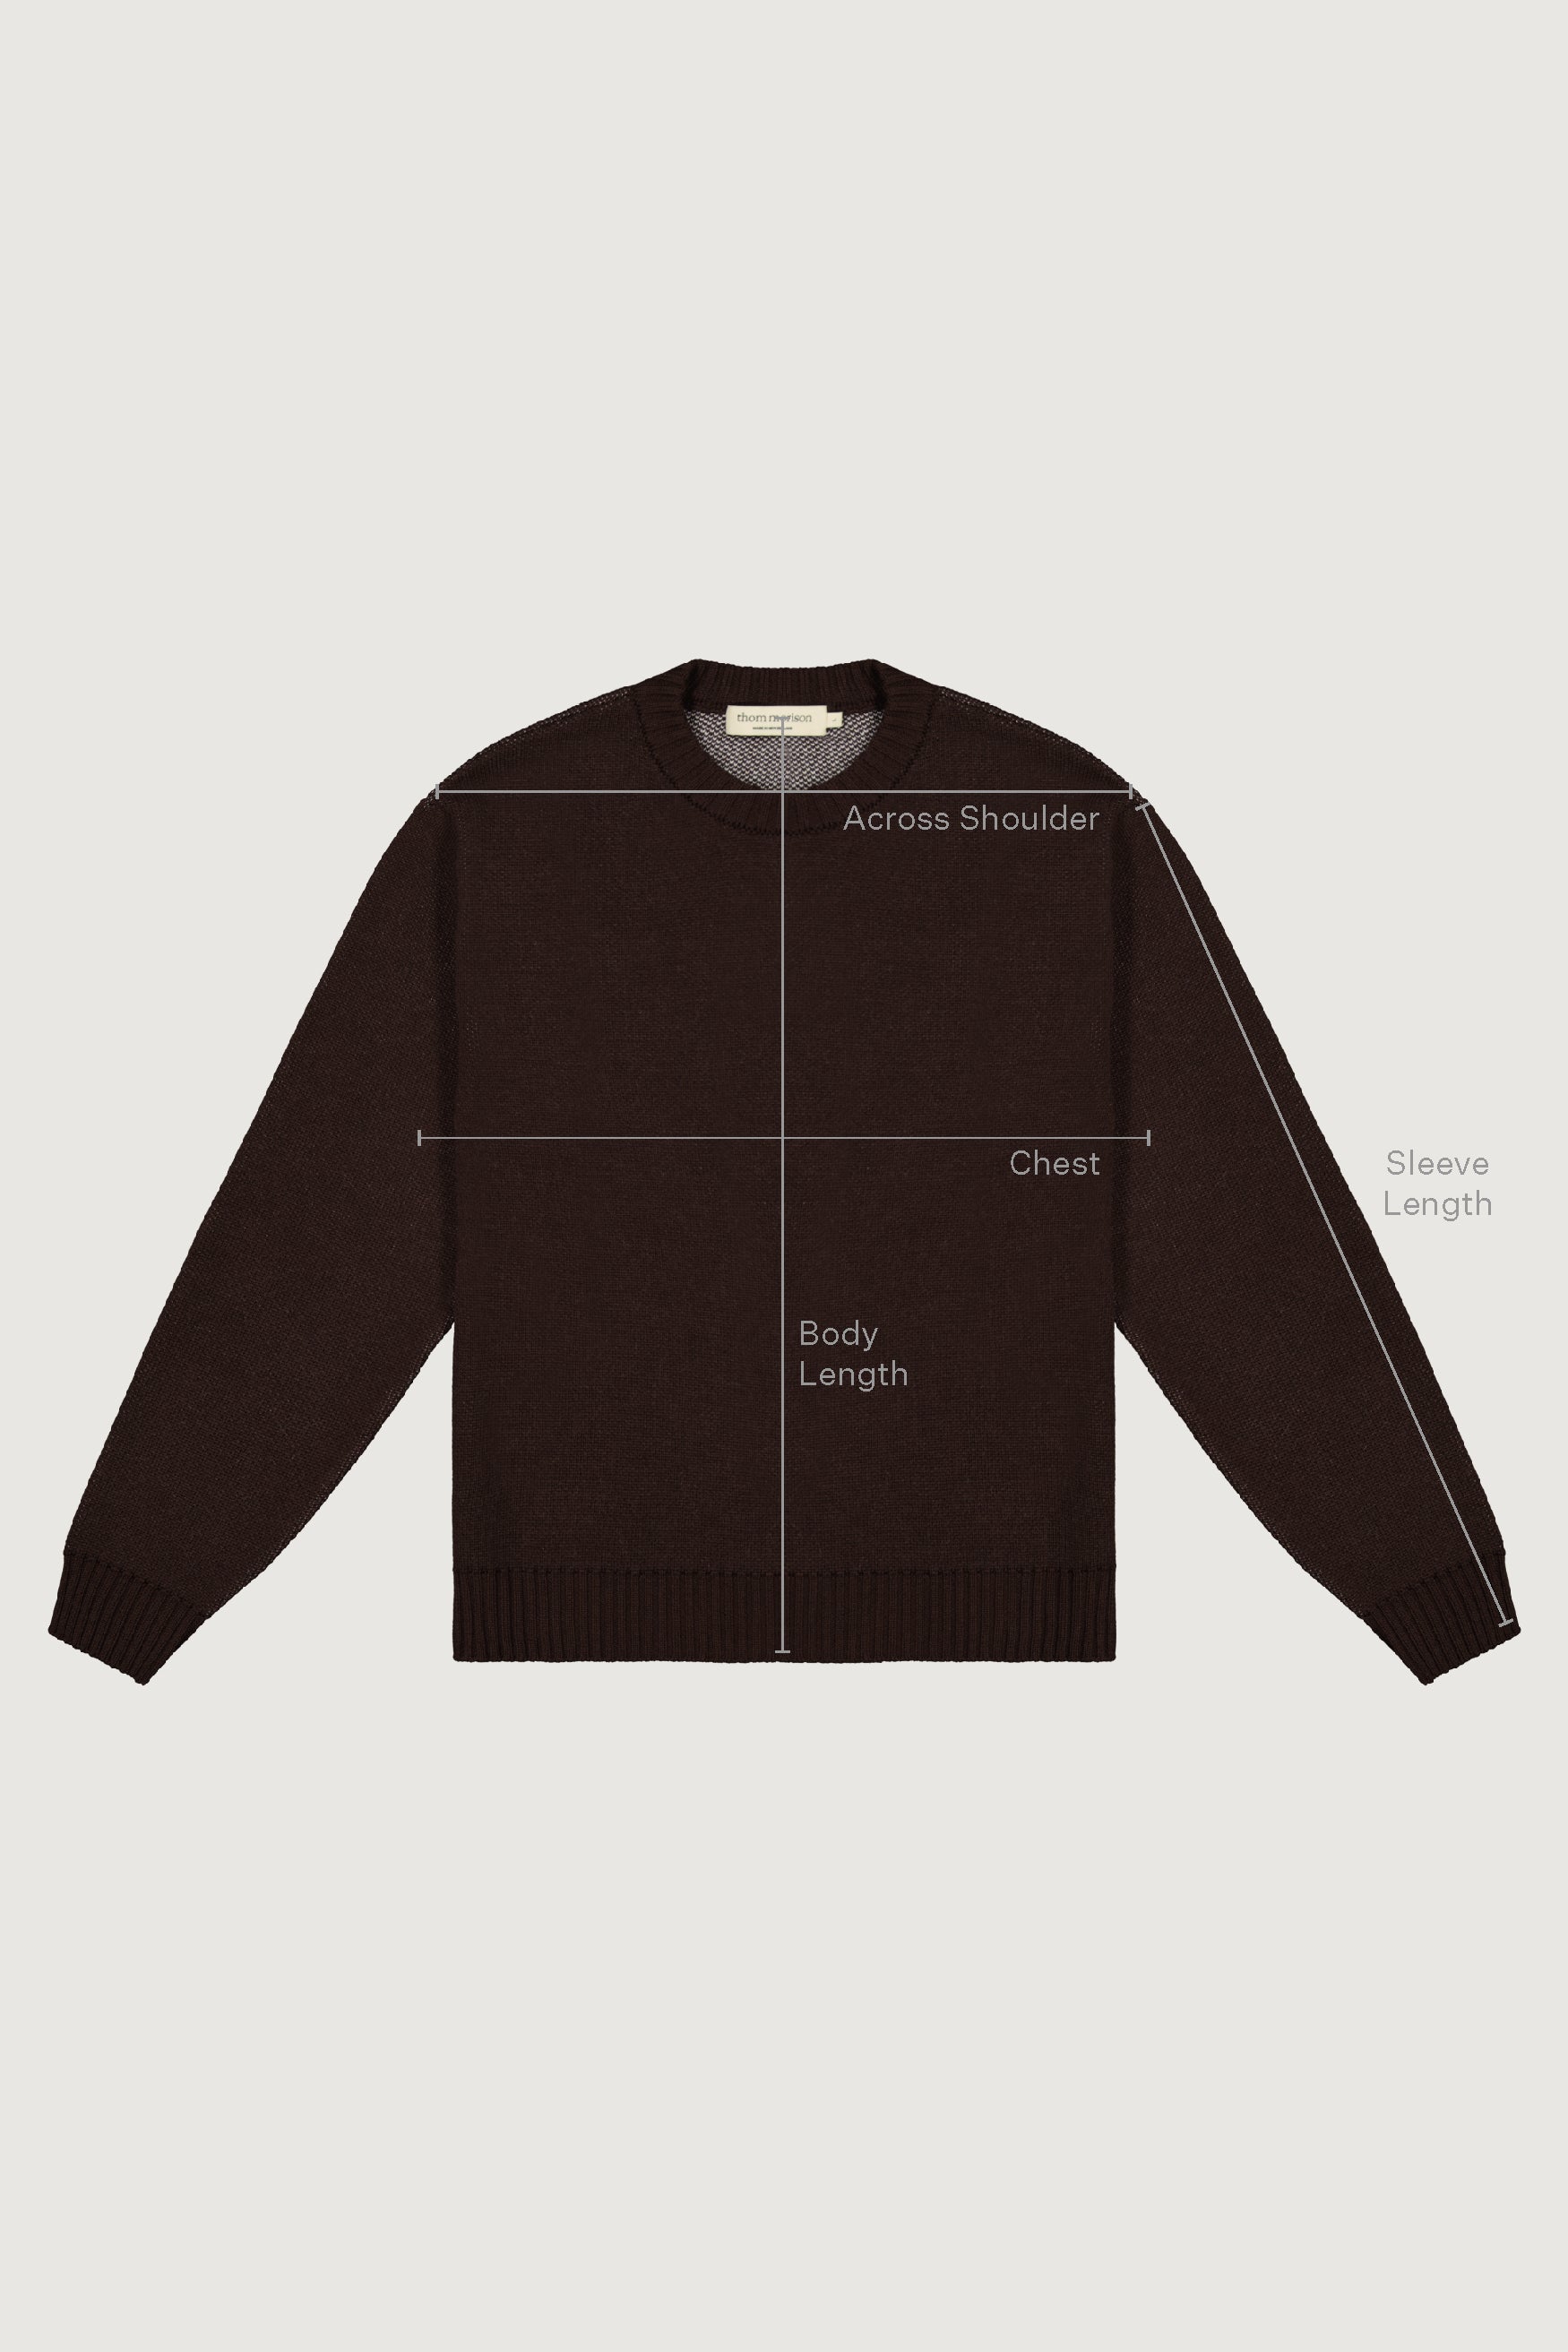 Merino Jacquard Sweater - Earth